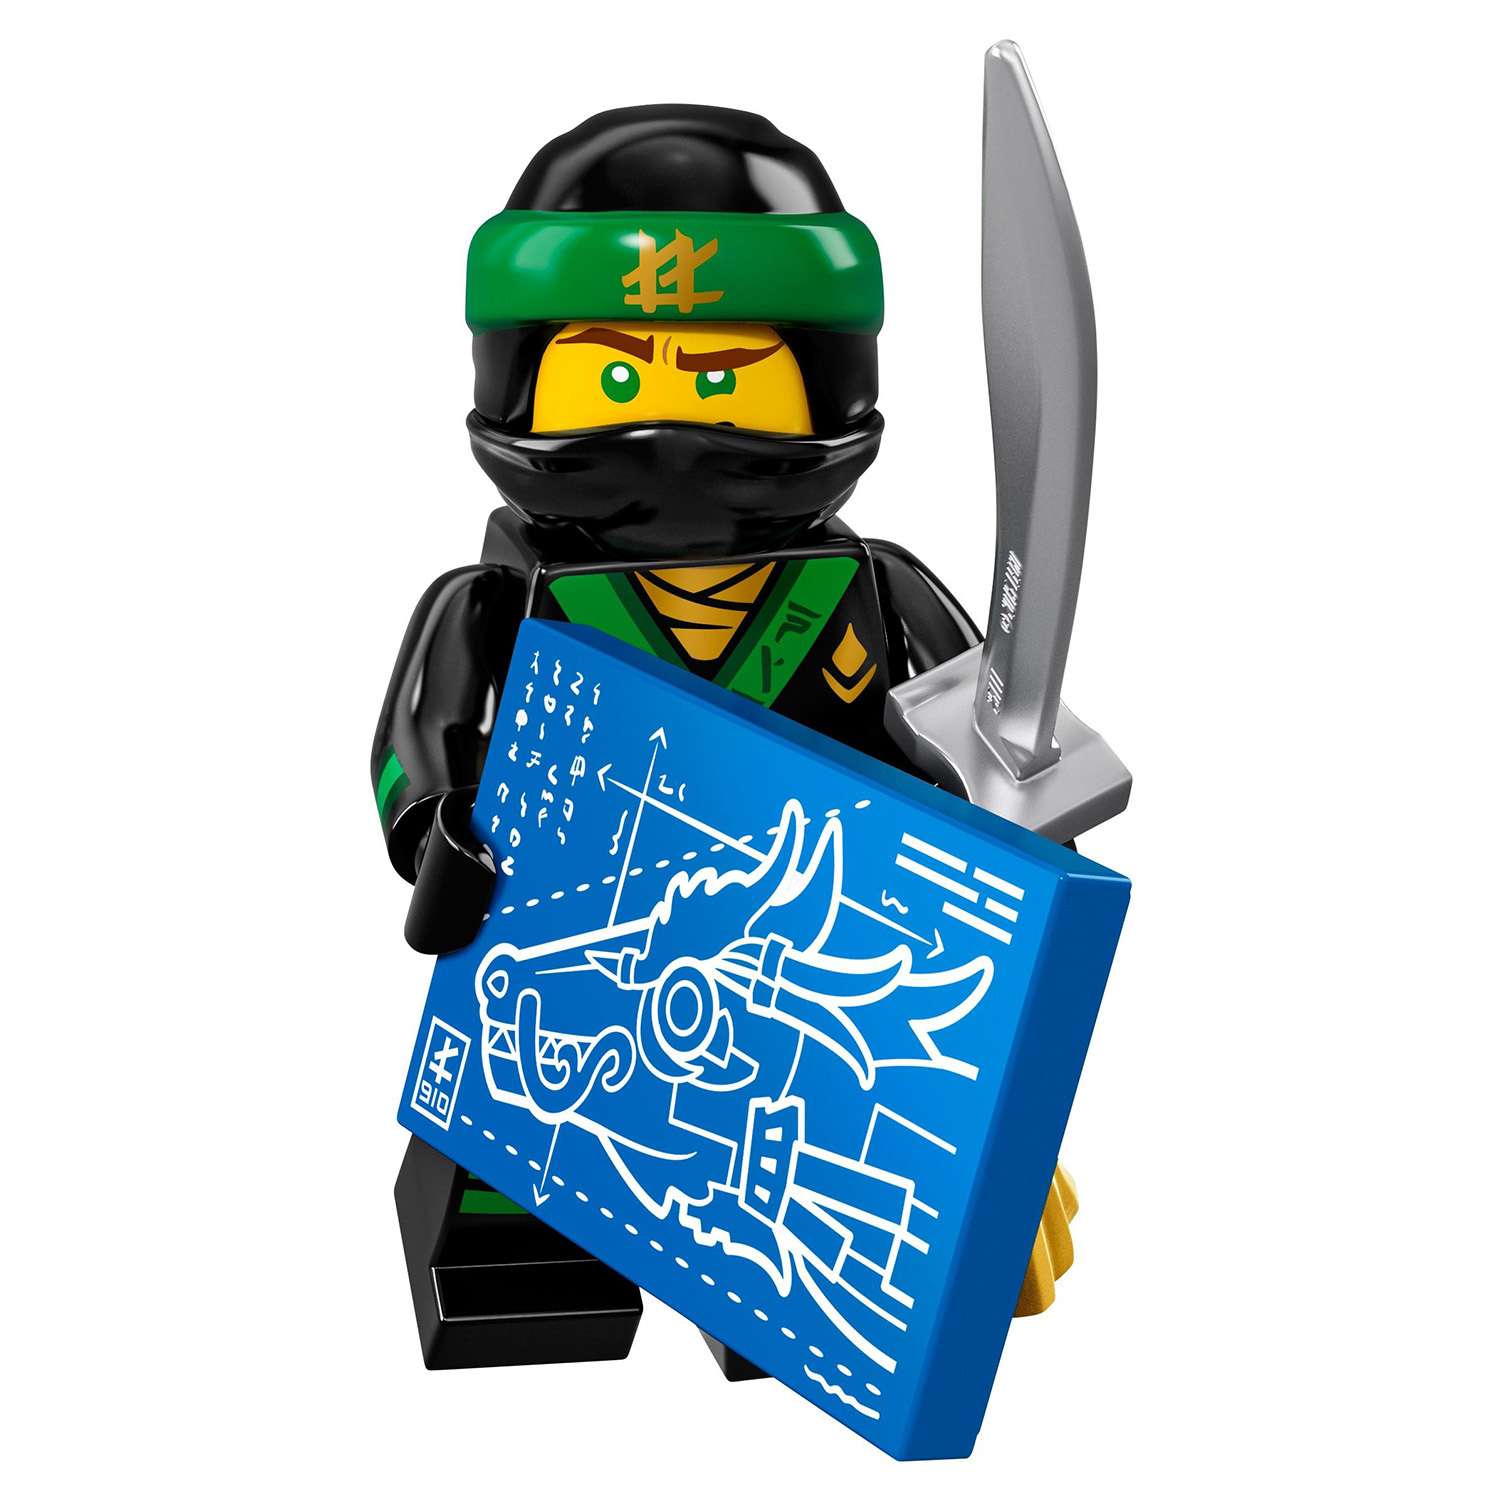 Конструктор LEGO Minifigures Минифигурки ФИЛЬМ: НИНДЗЯГО (71019) в ассортименте - фото 11